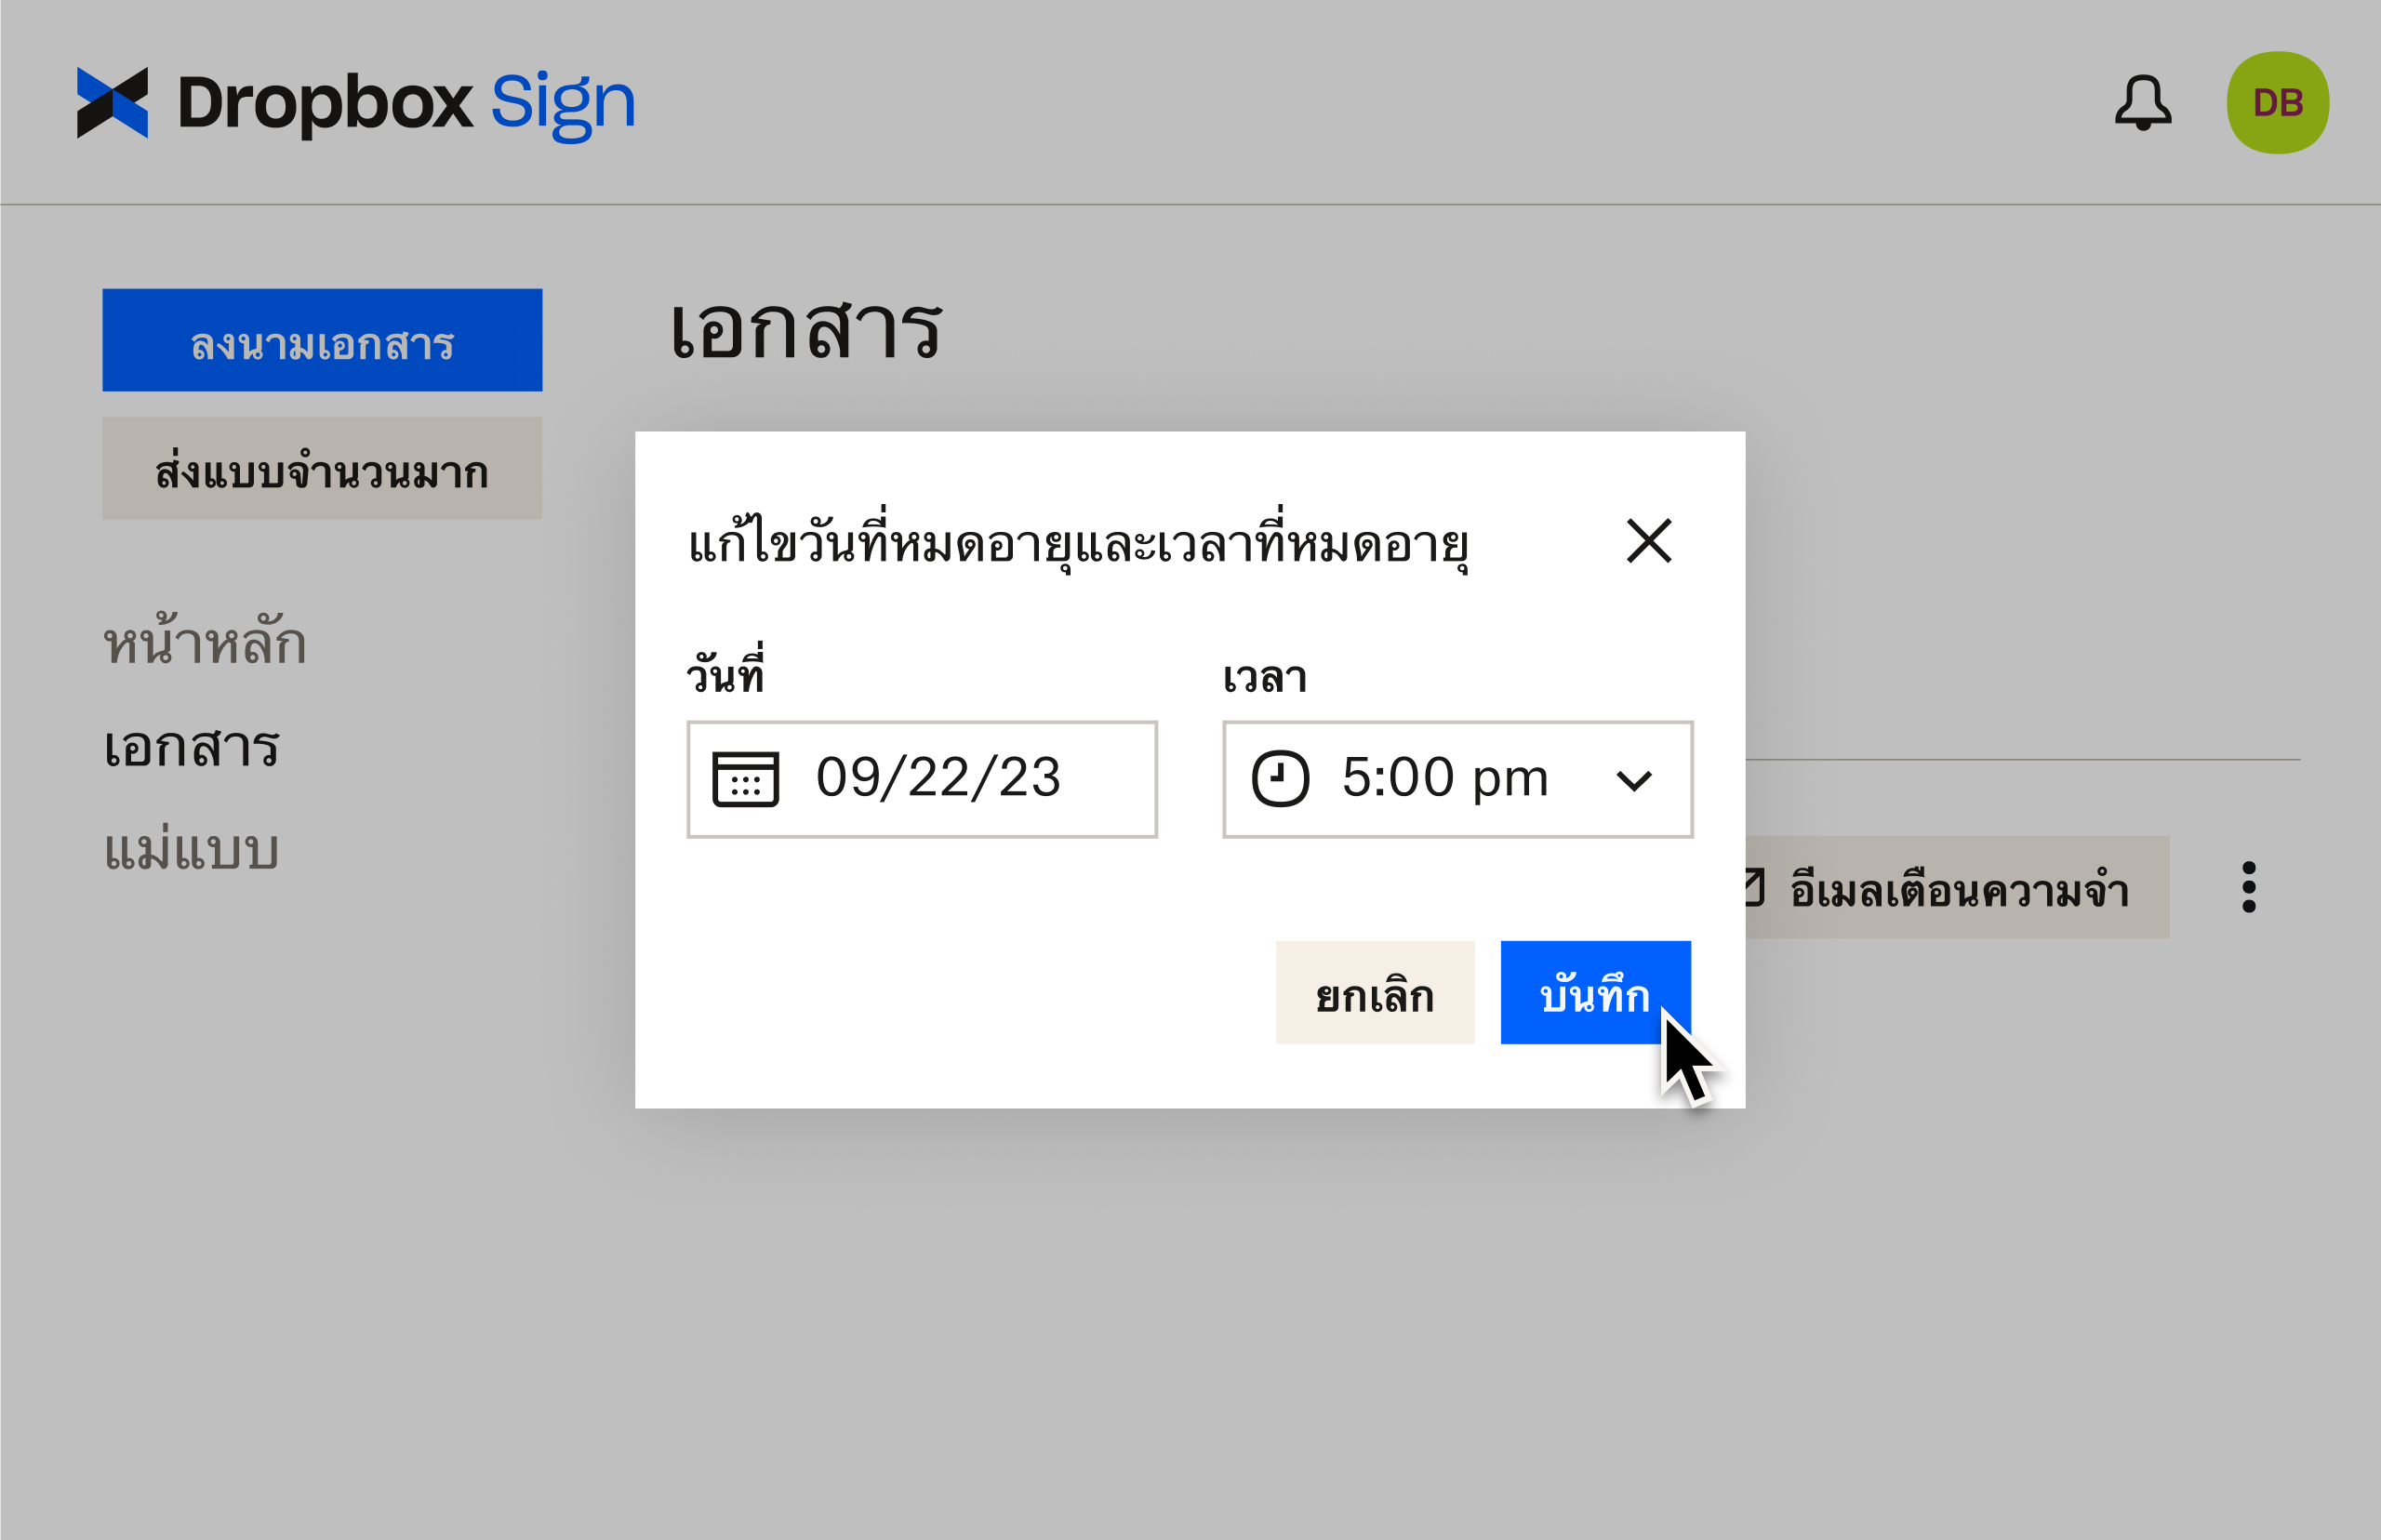 UI ของ Dropbox Sign แสดงวิธีแก้ไขวันที่หมดอายุหลังจากส่งเอกสารเพื่อขอลายเซ็น